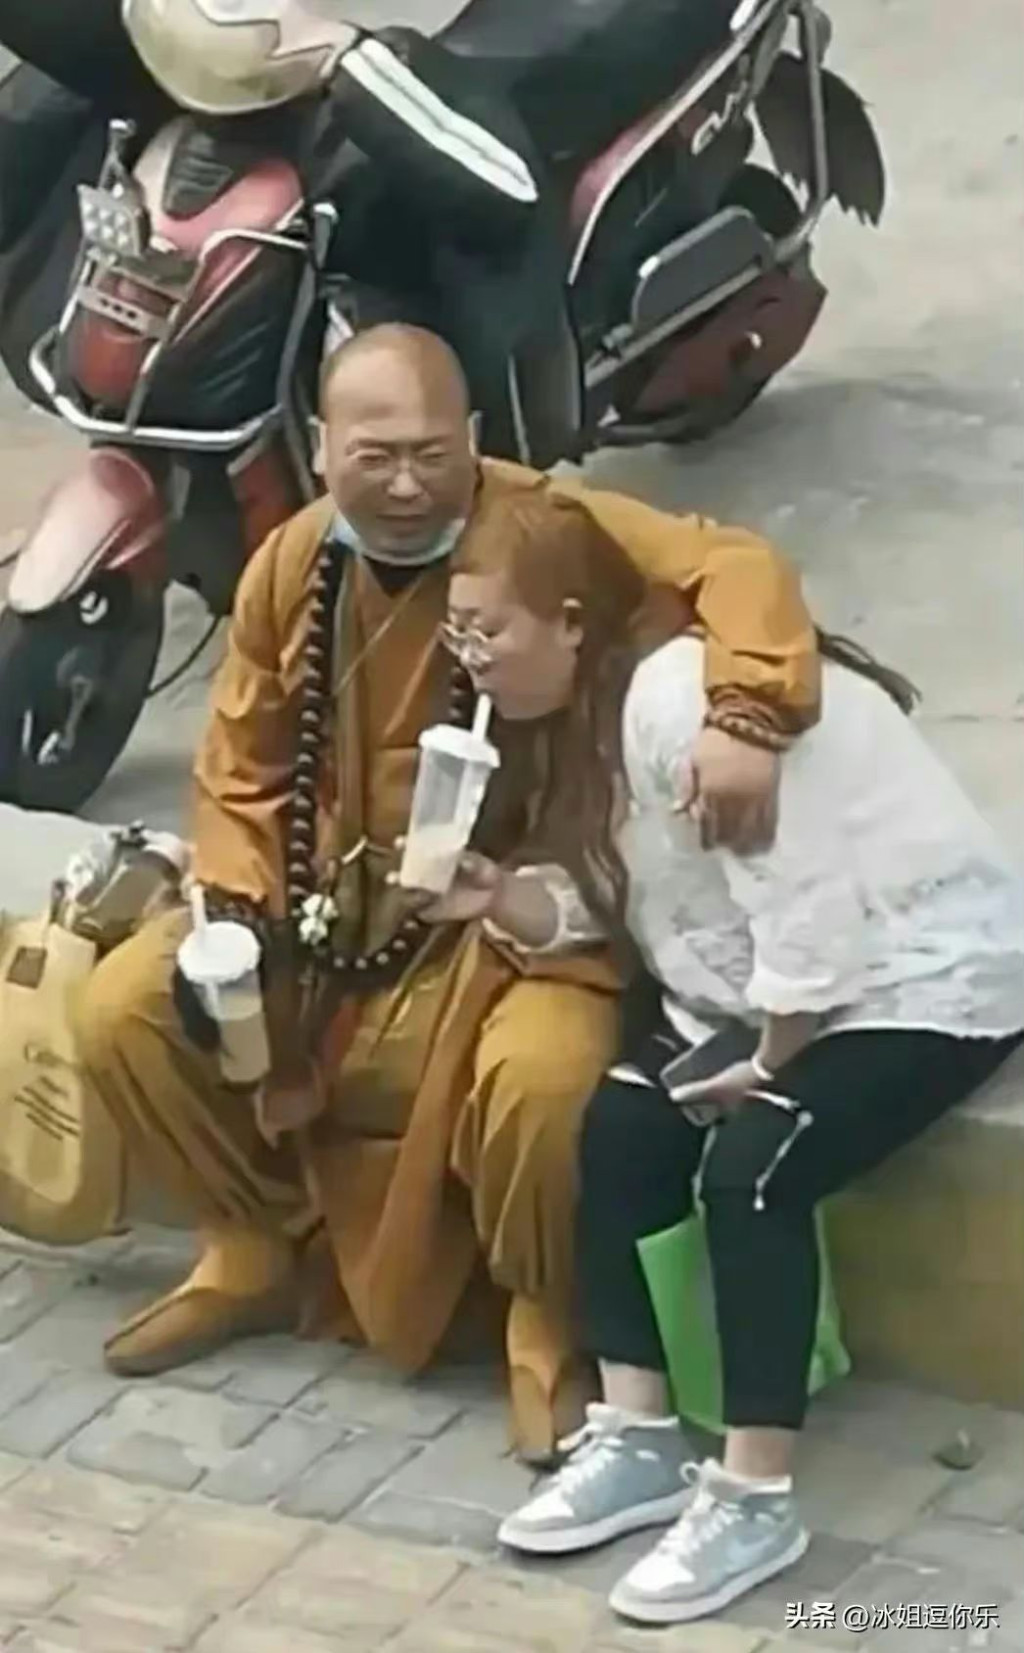 二人在街頭齊喝奶茶。